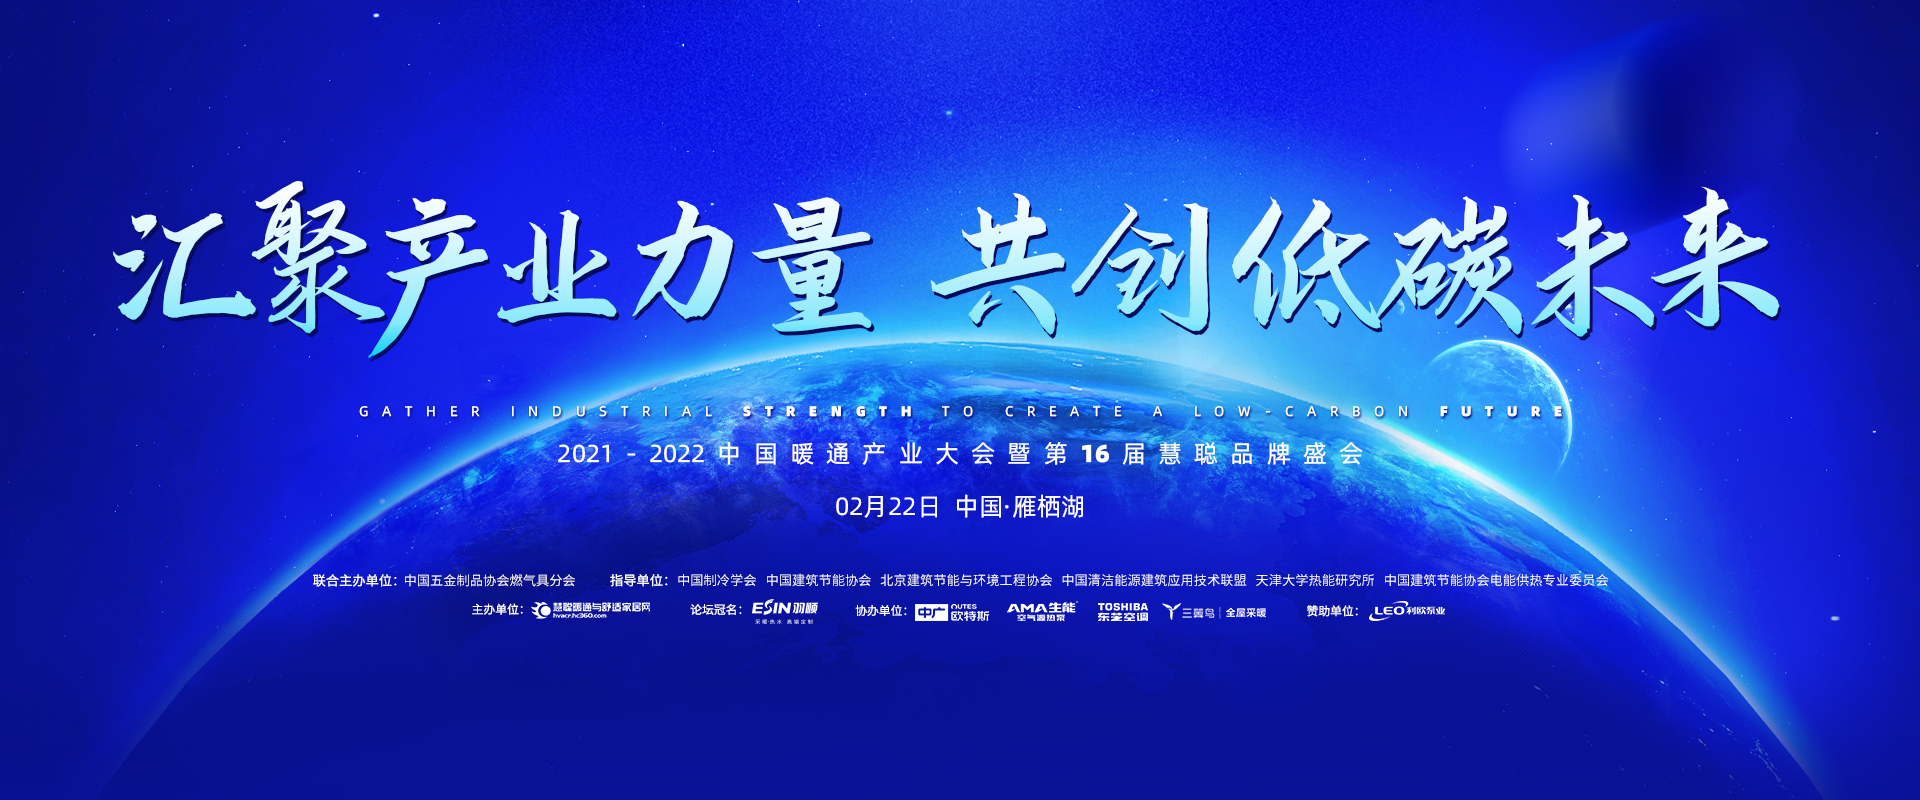 2021-2022中国暖通产业大会暨第16届慧聪品牌盛会